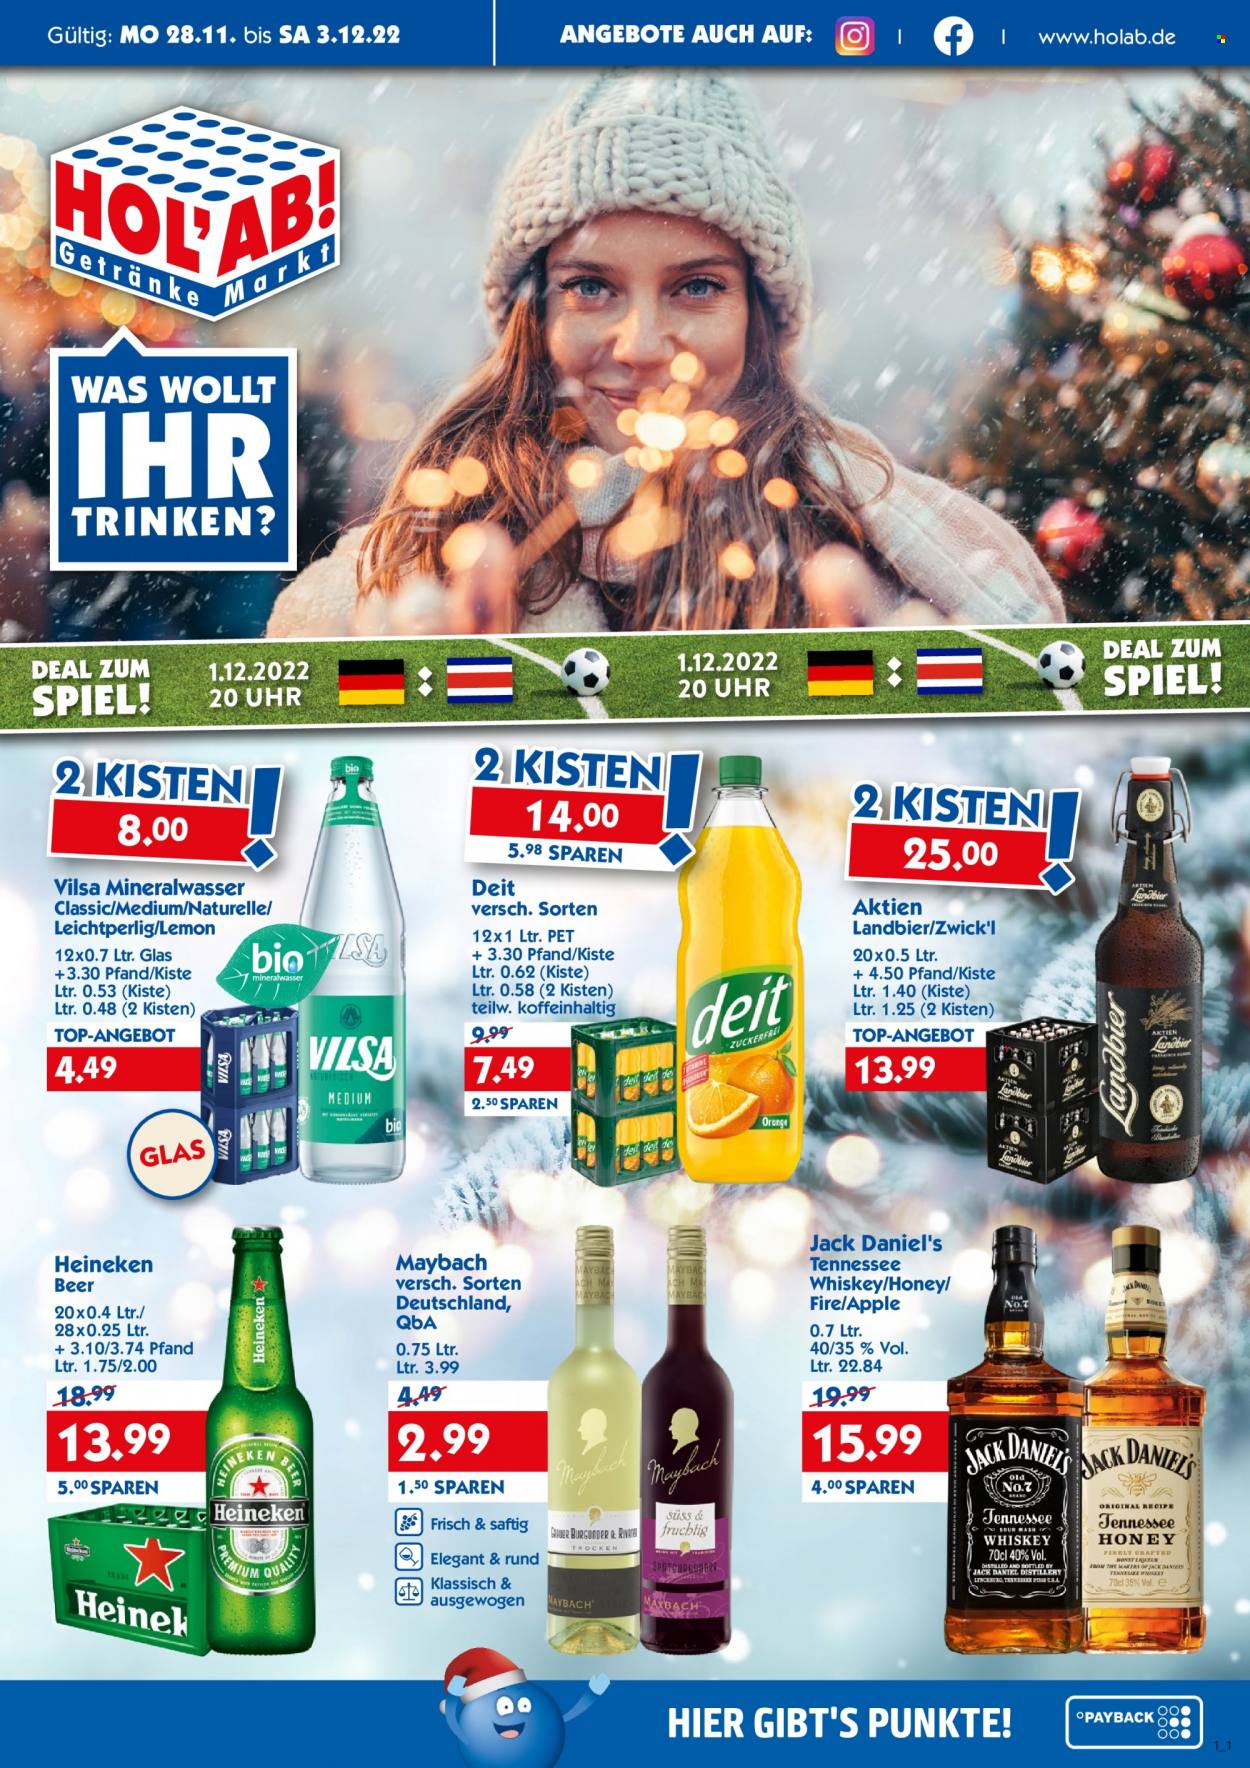 thumbnail - Prospekte Hol'ab! Getränkemarkt - 28.11.2022 - 3.12.2022 - Produkte in Aktion - Bier, Heineken, Alkohol, Vilsa, Mineralwasser, Jack Daniel’s. Seite 1.